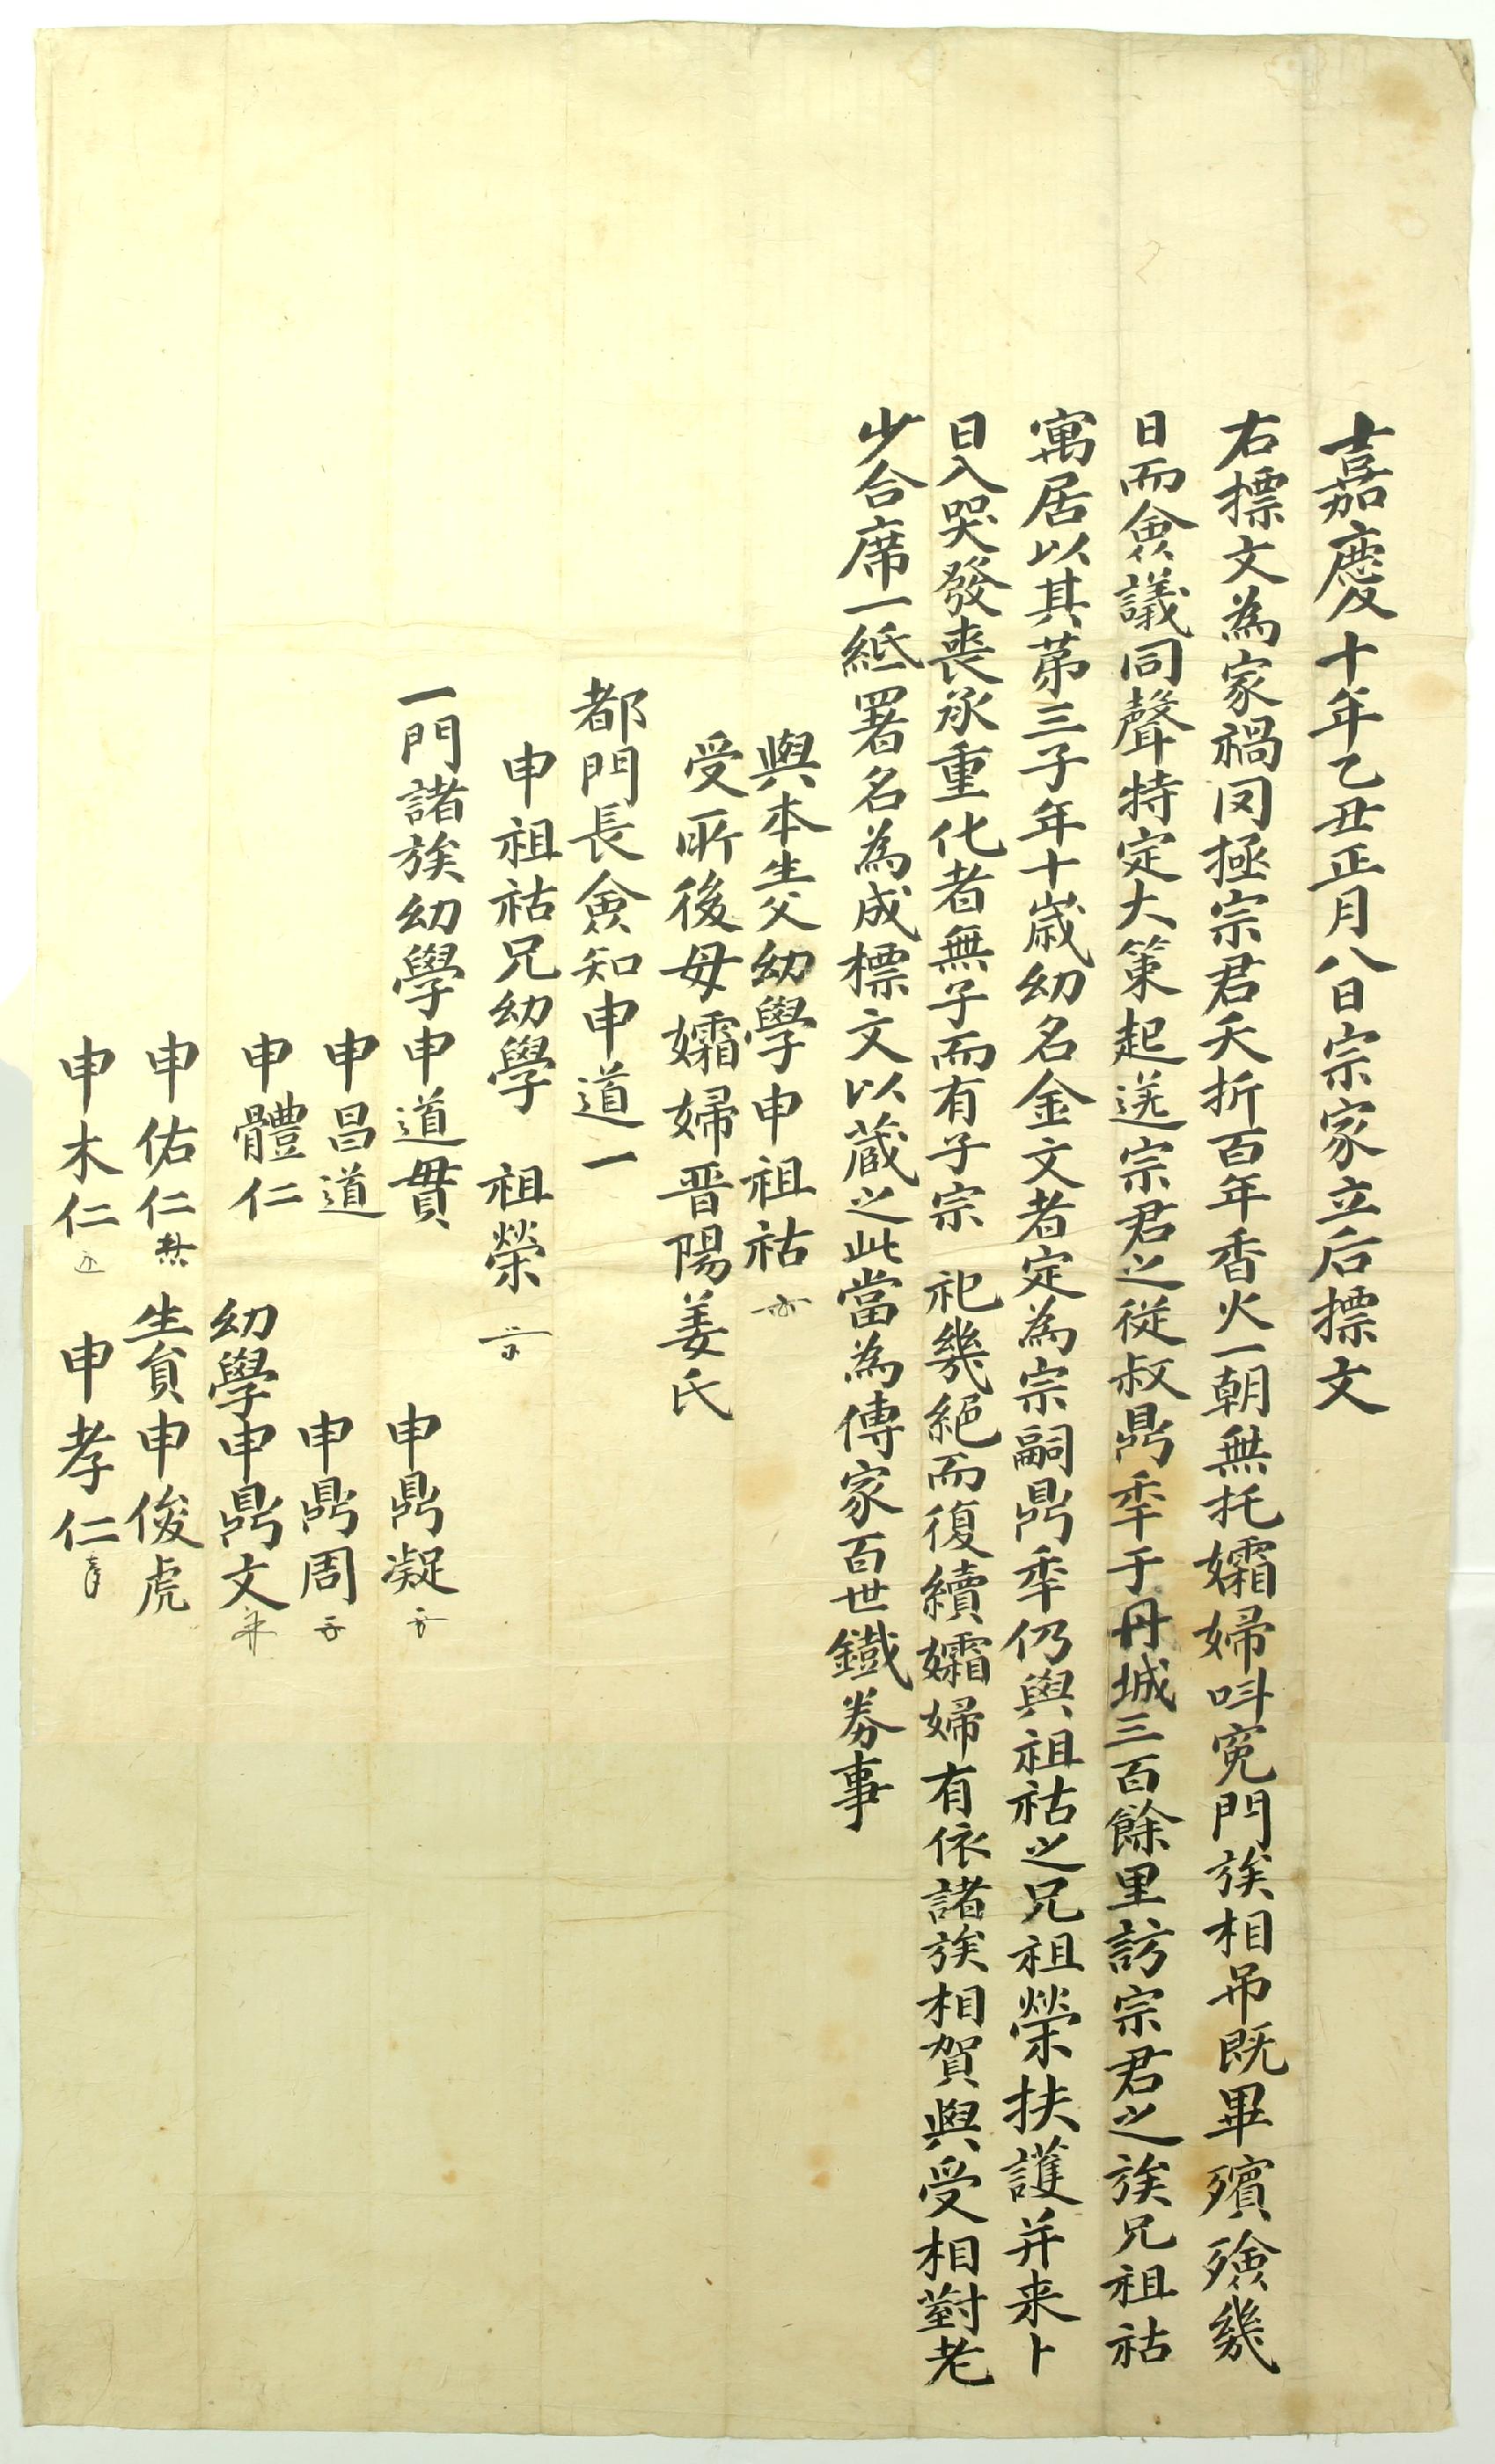 신씨가(申氏家)에서 1805년에 작성한 입후문기